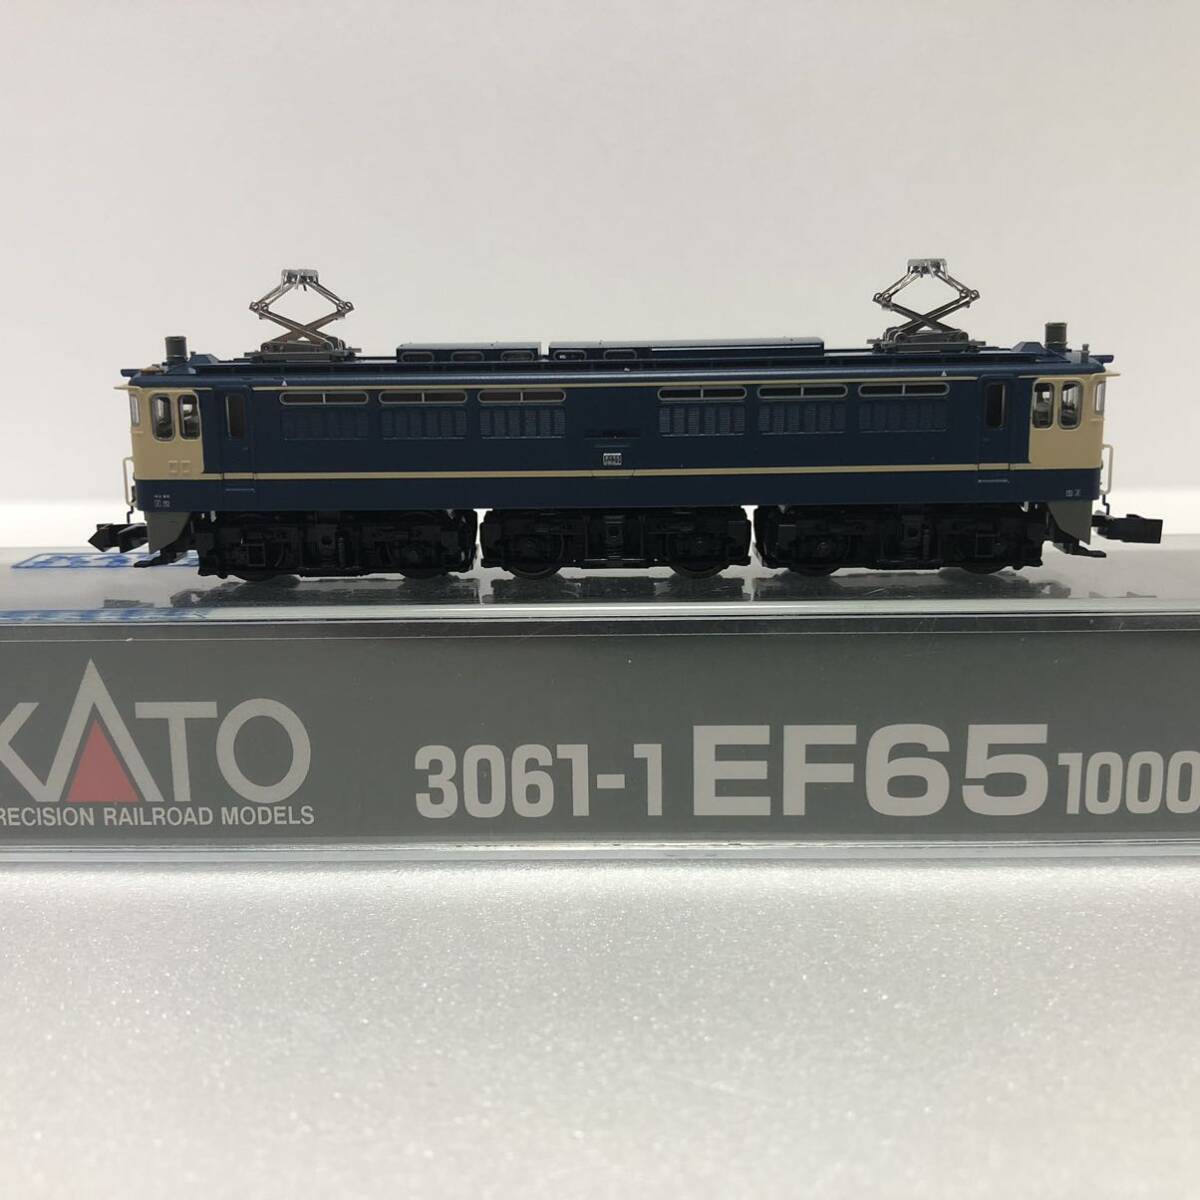 ★1円スタート★3061-1 EF65 1000 後期形 電気機関車 KATO_画像4